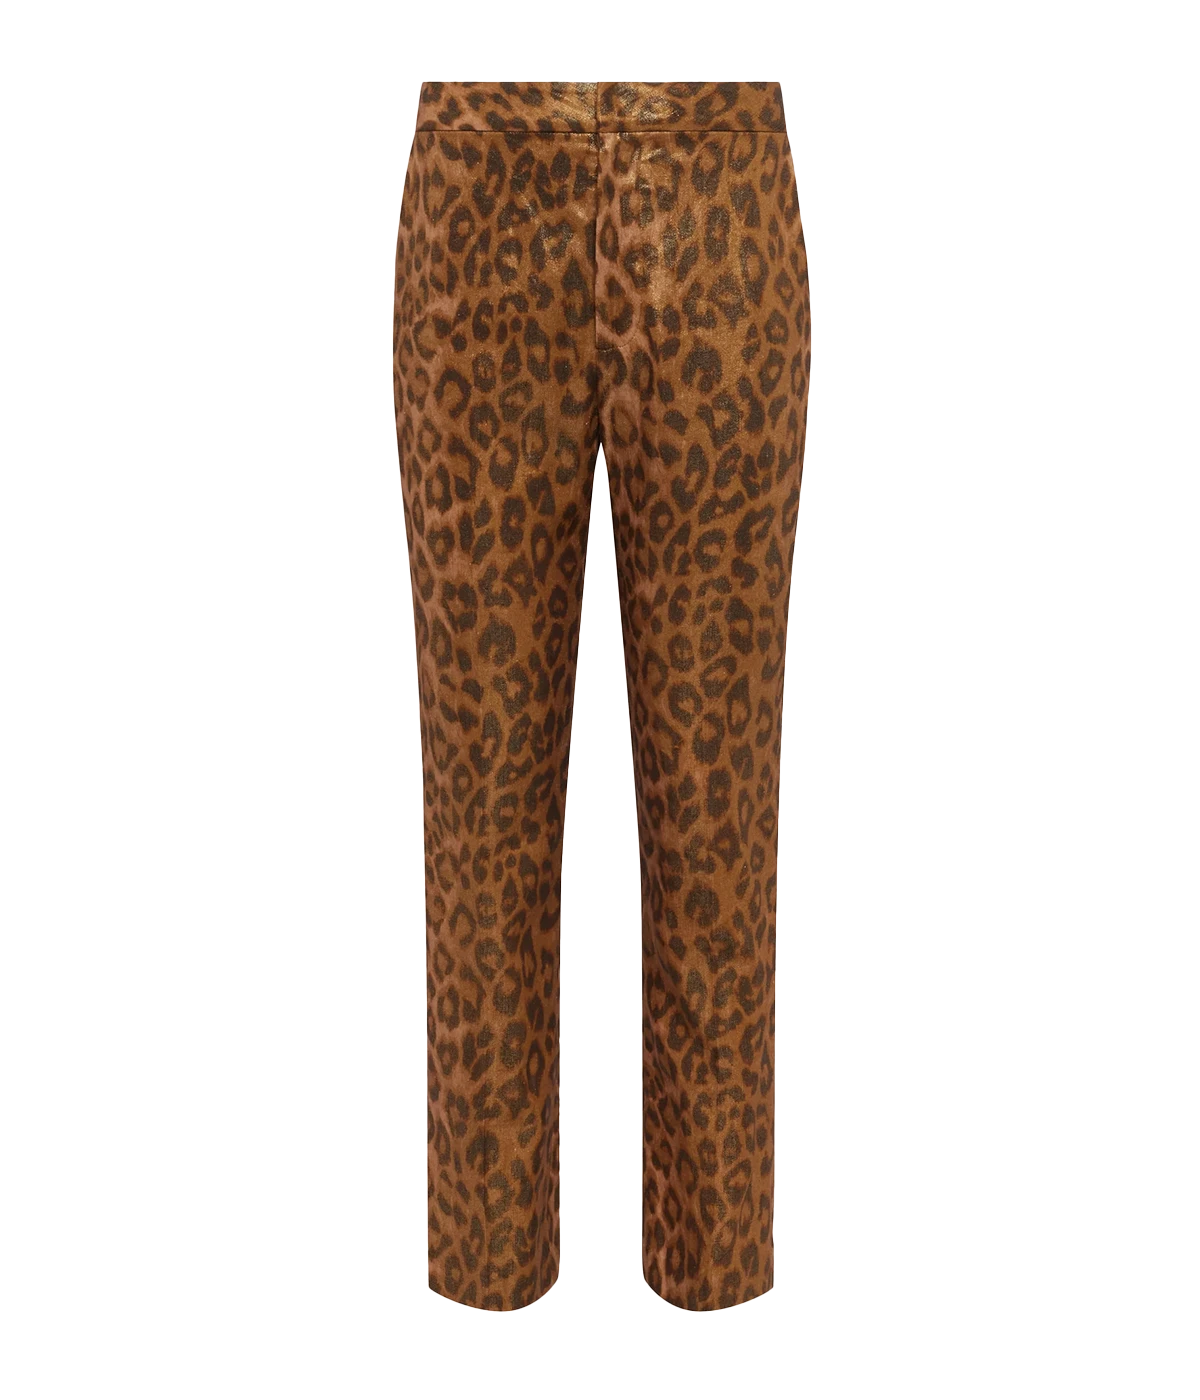 Rebel Trouser in Gold Multi & Cheetah